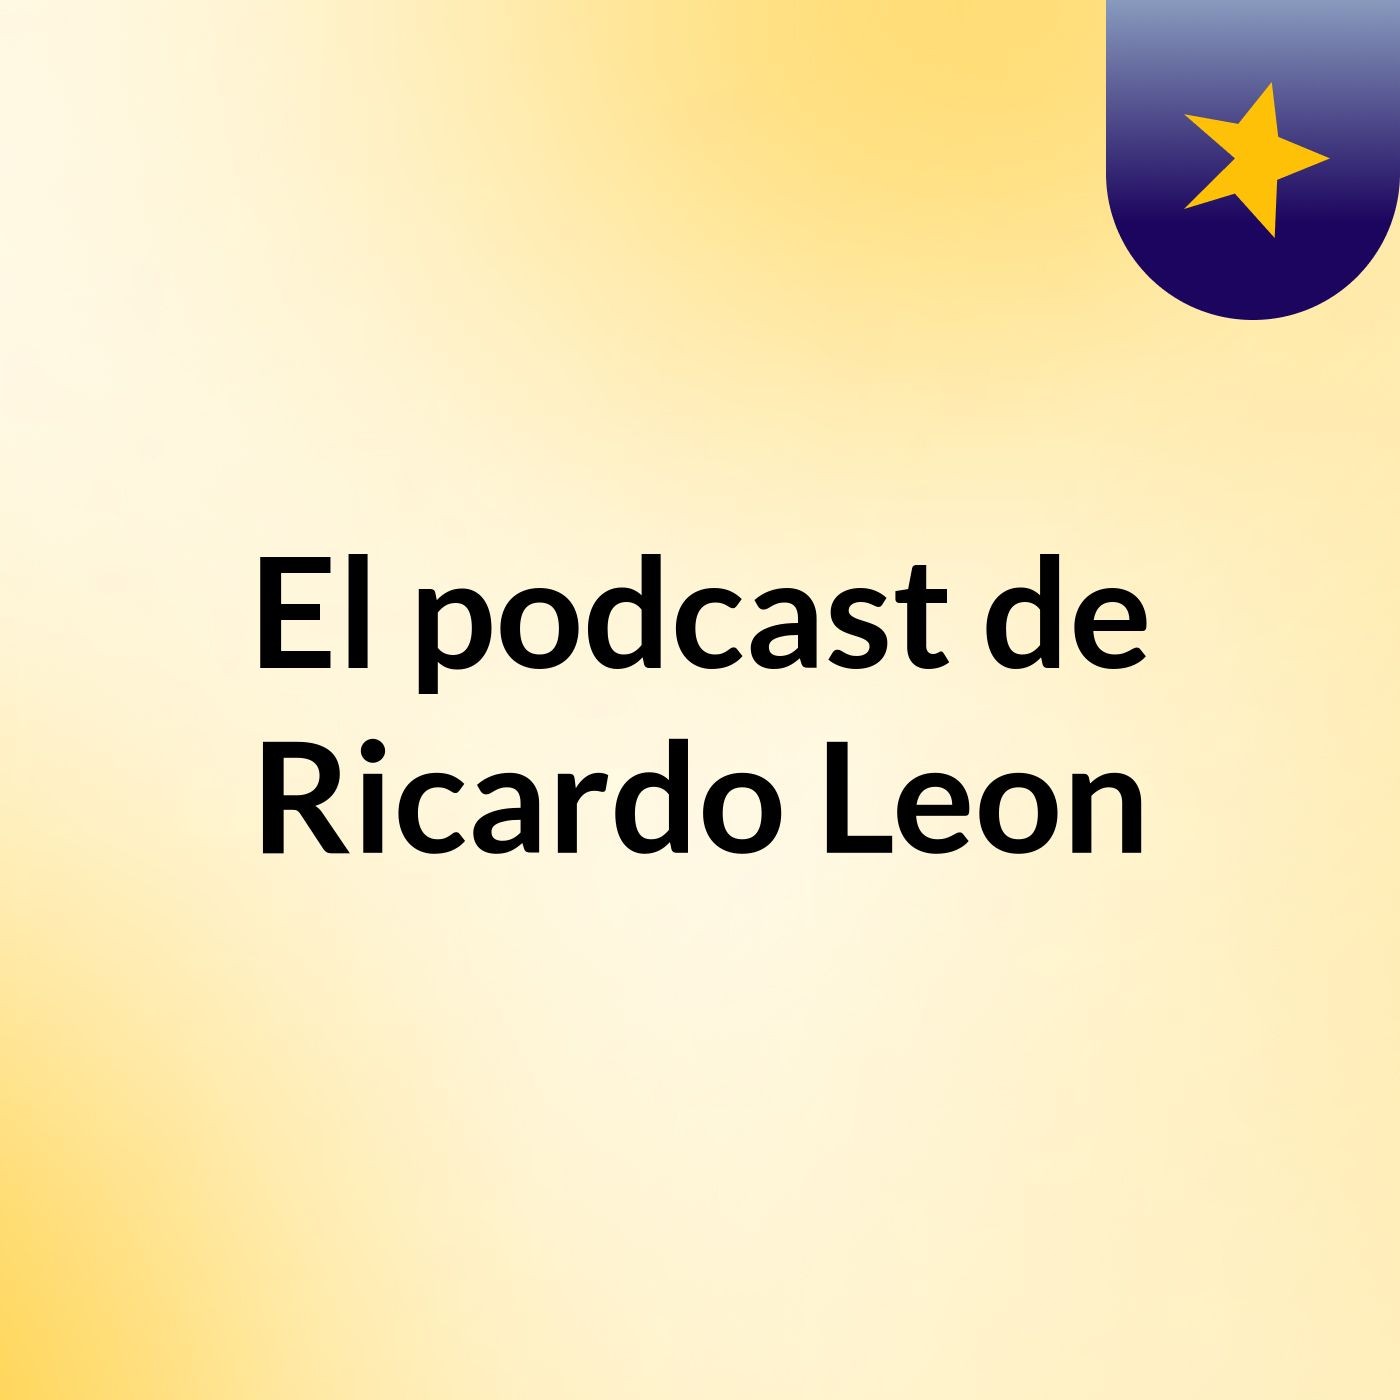 El podcast de Ricardo Leon